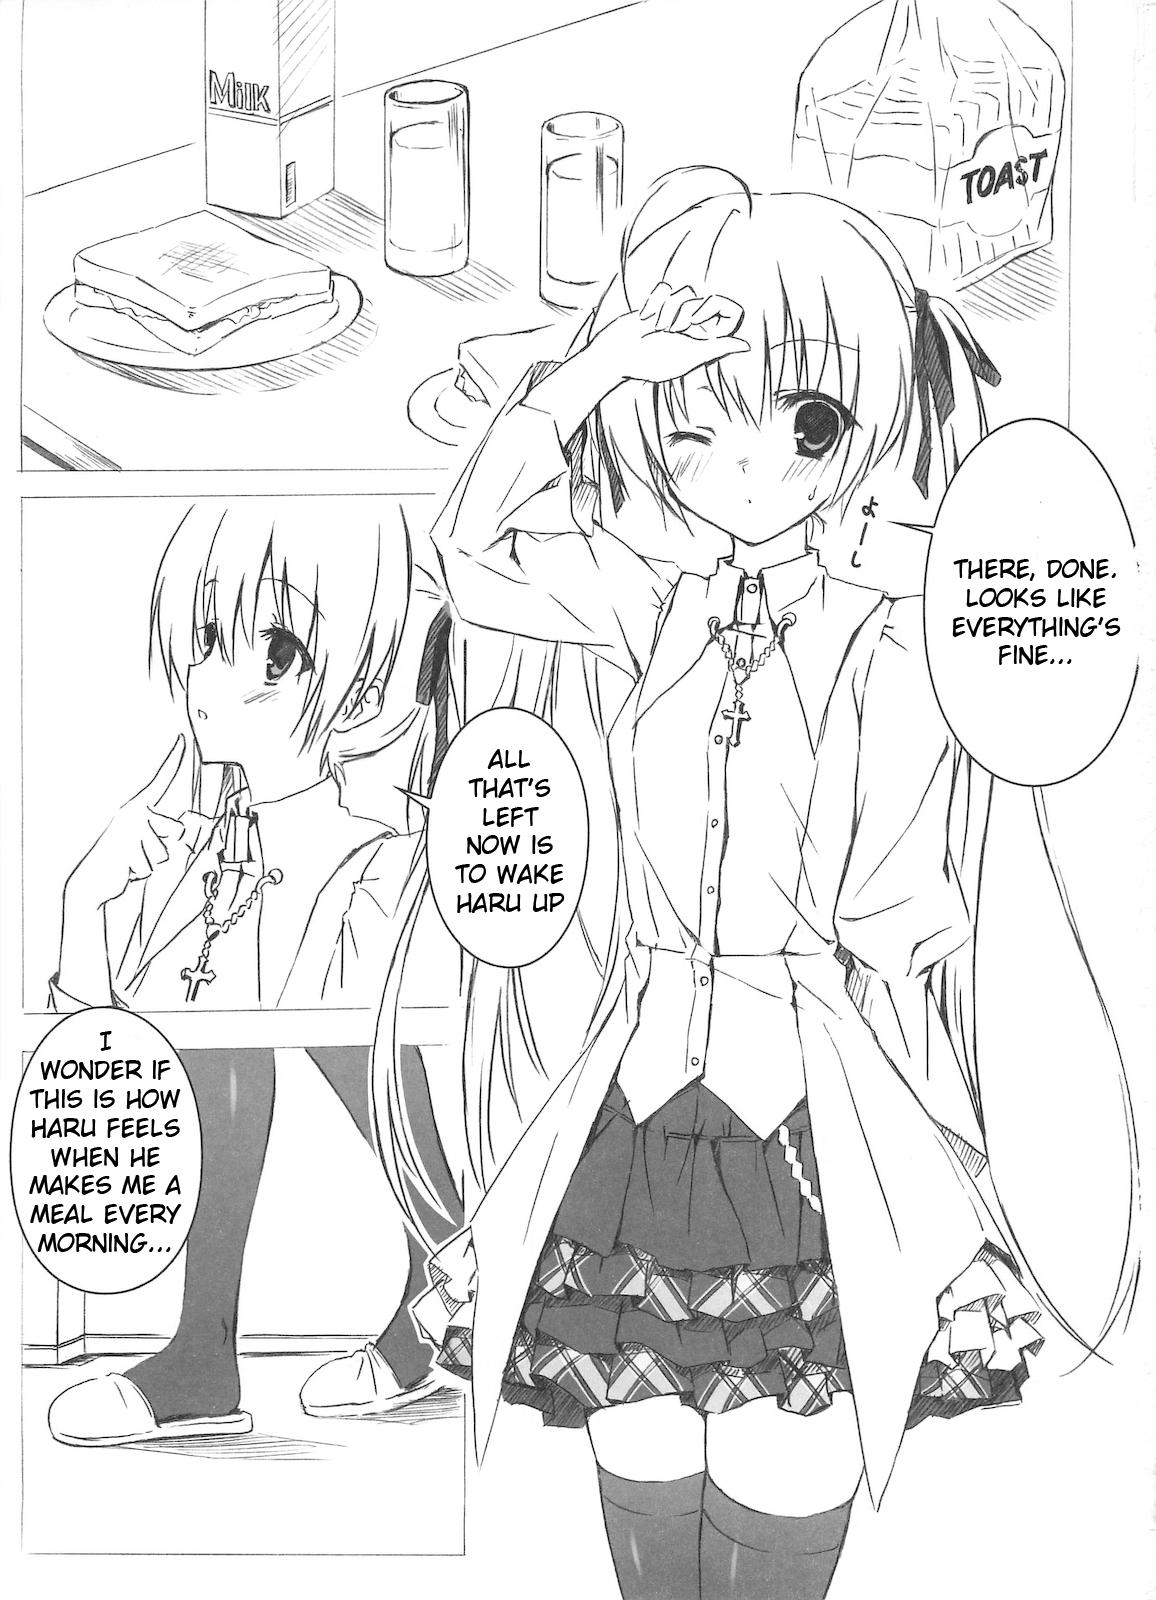 Edging Sora no Omocha - Yosuga no sora Asstomouth - Page 3